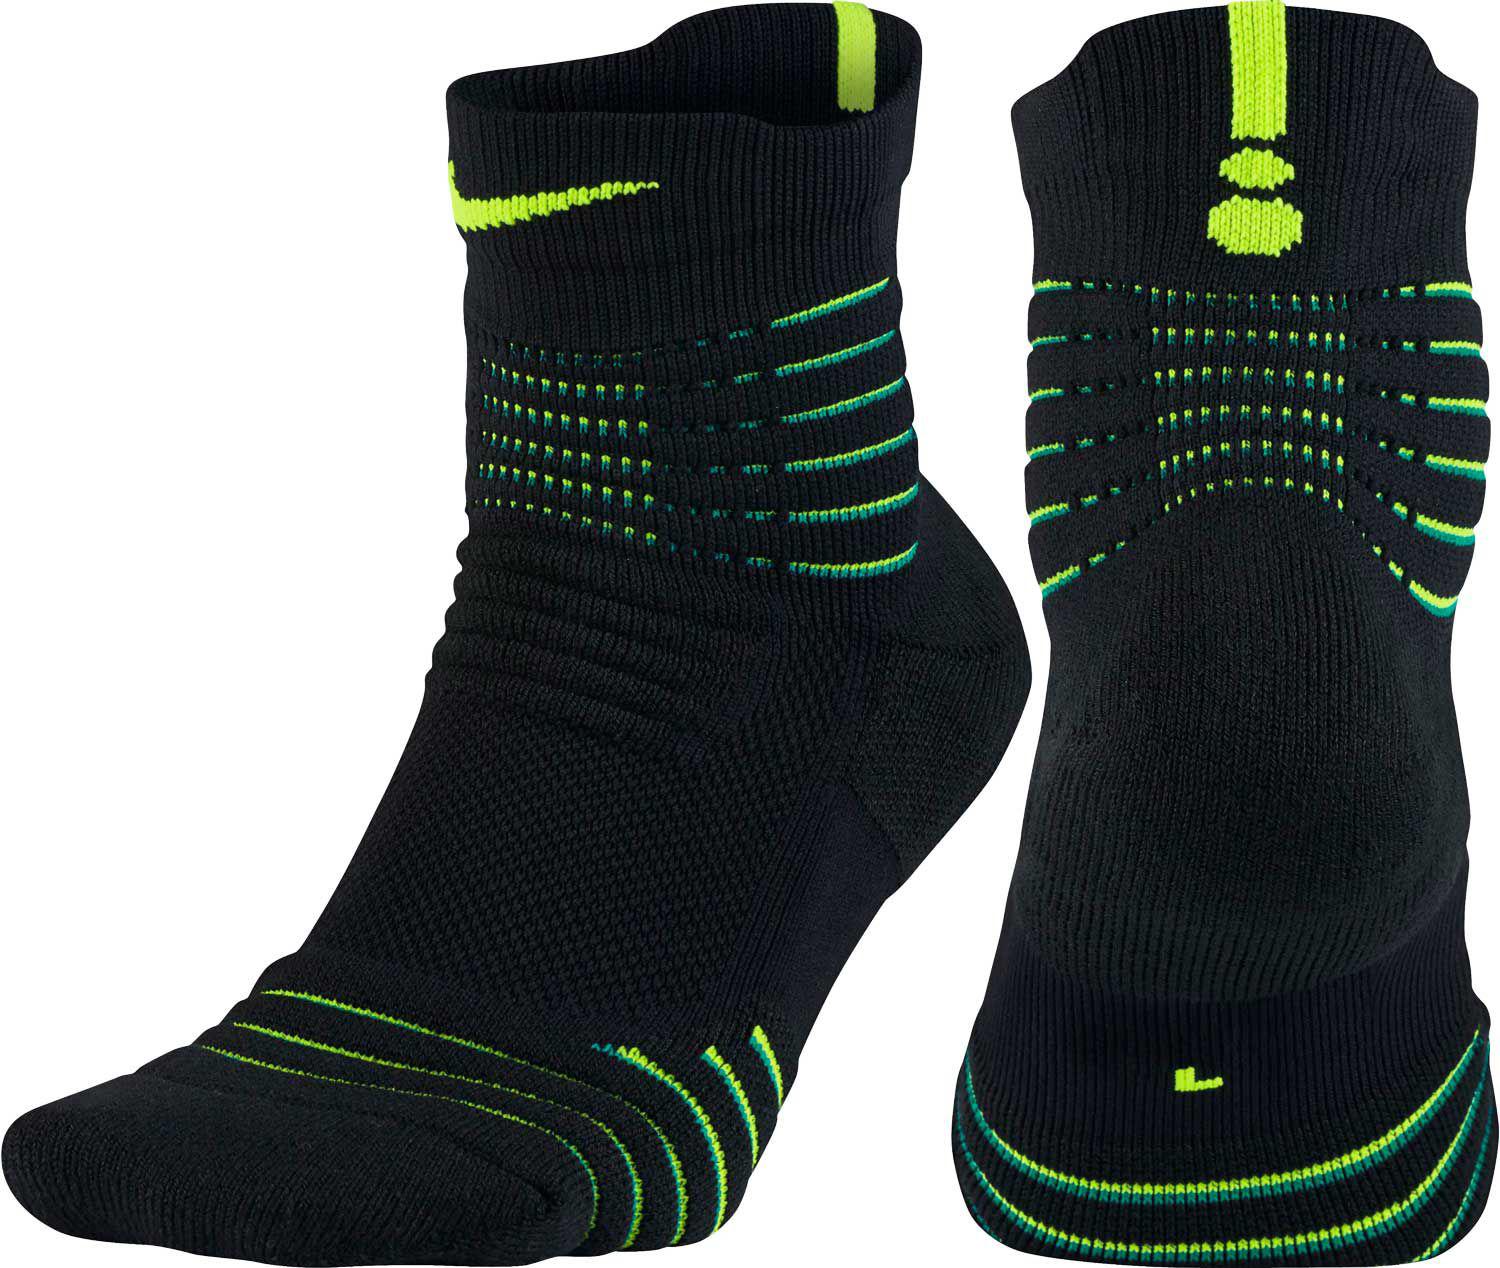 Lyst - Nike Elite Versatility High Quarter Basketball Socks in Black for Men